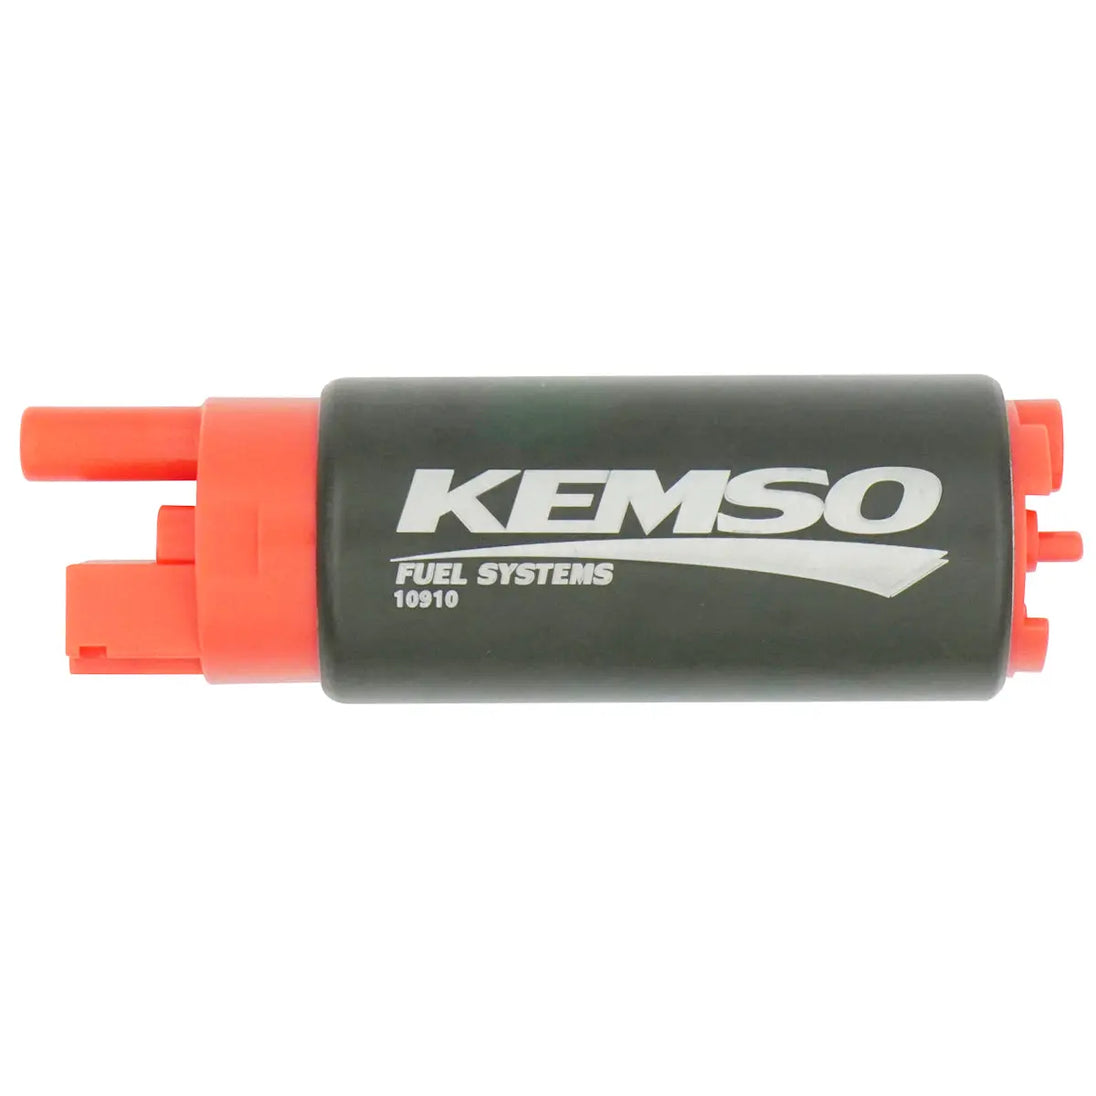 KEMSO 340LPH High Performance Fuel Pump for Isuzu Oasis 1996-1999 - KEMSO